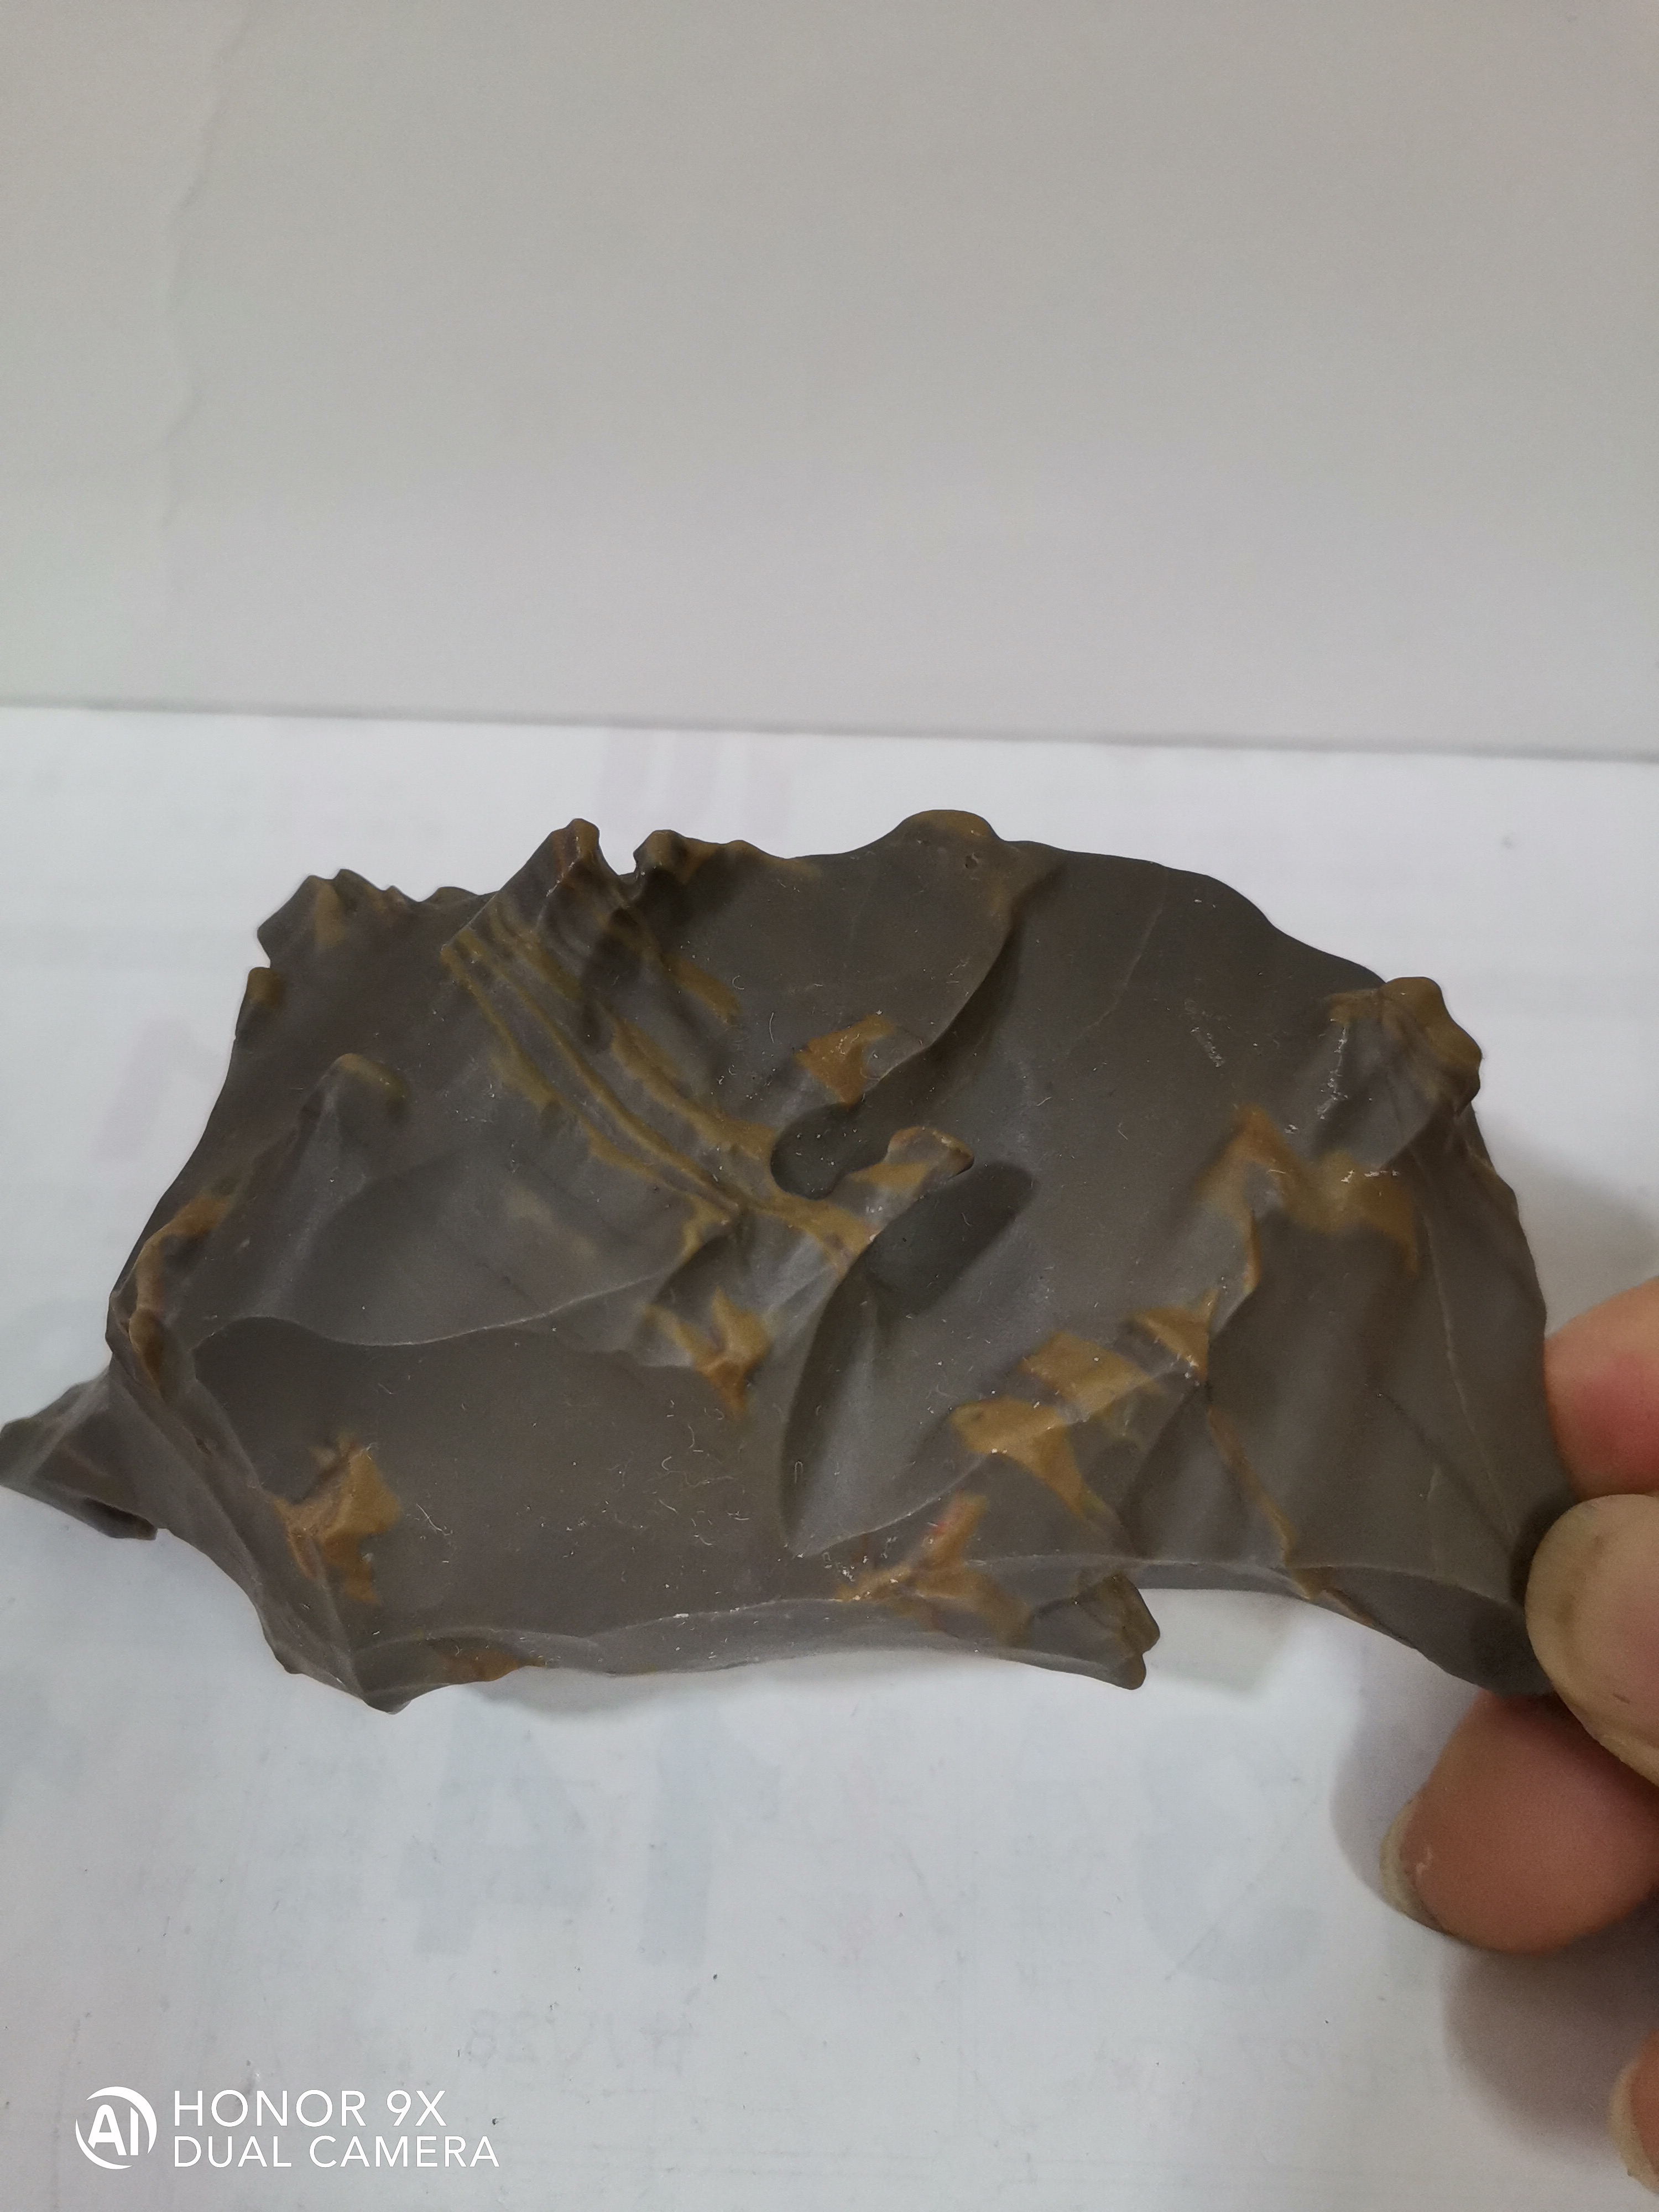 新疆彩泥石是目前新疆大漠石新品种中的一个石种,具